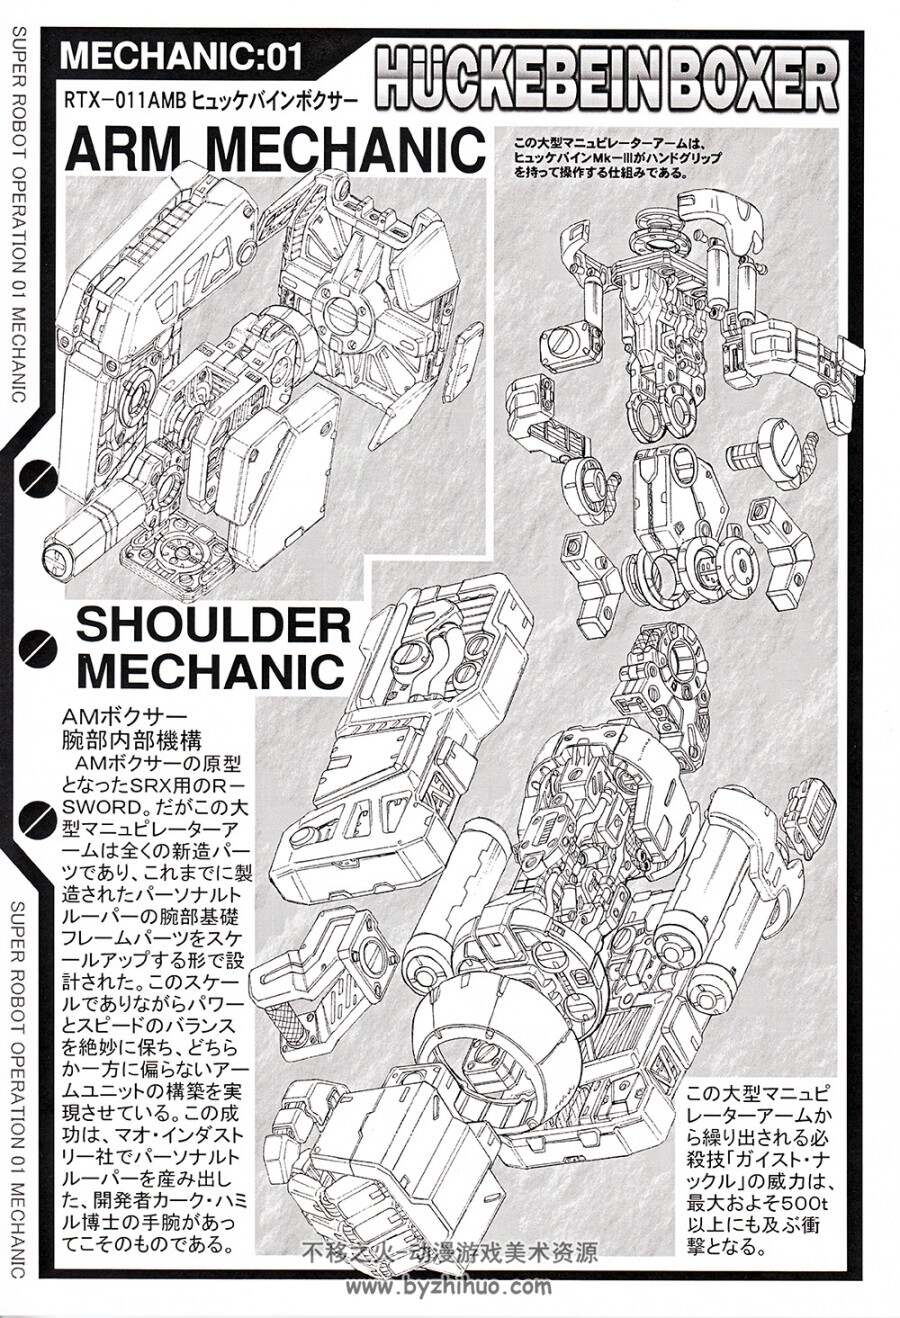 超级机器人大战同人线稿画集SUPER ROBOT OPERATION 01シャトーダッソーS.SHIMIZU.jpg